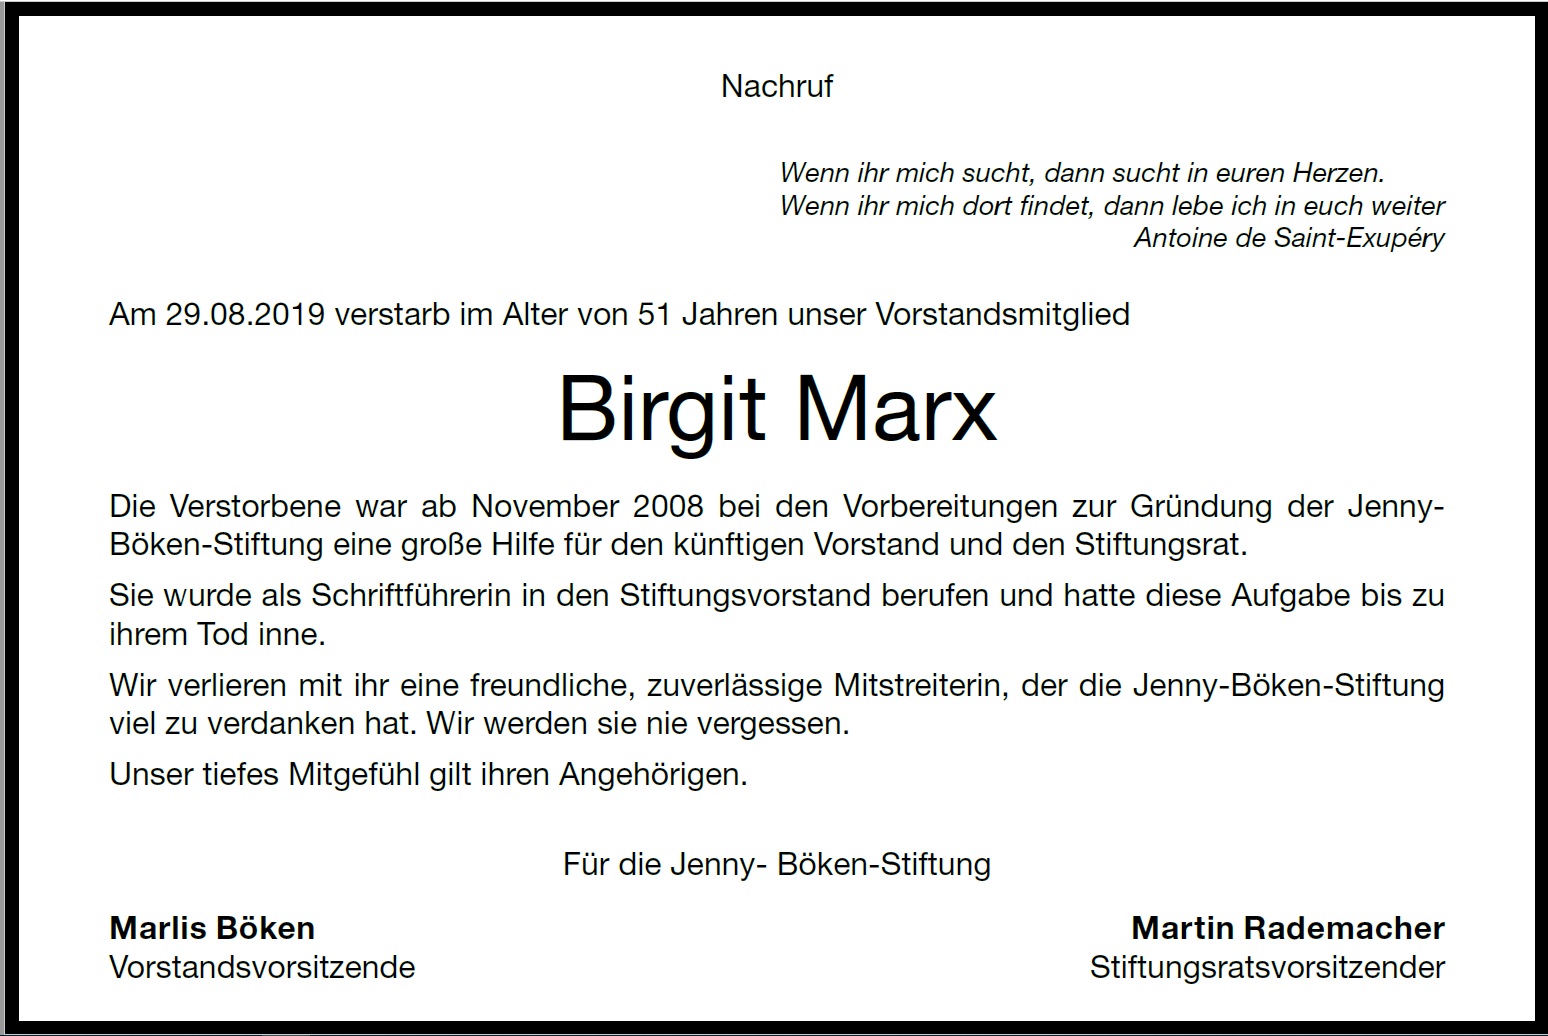 Birgit Marx